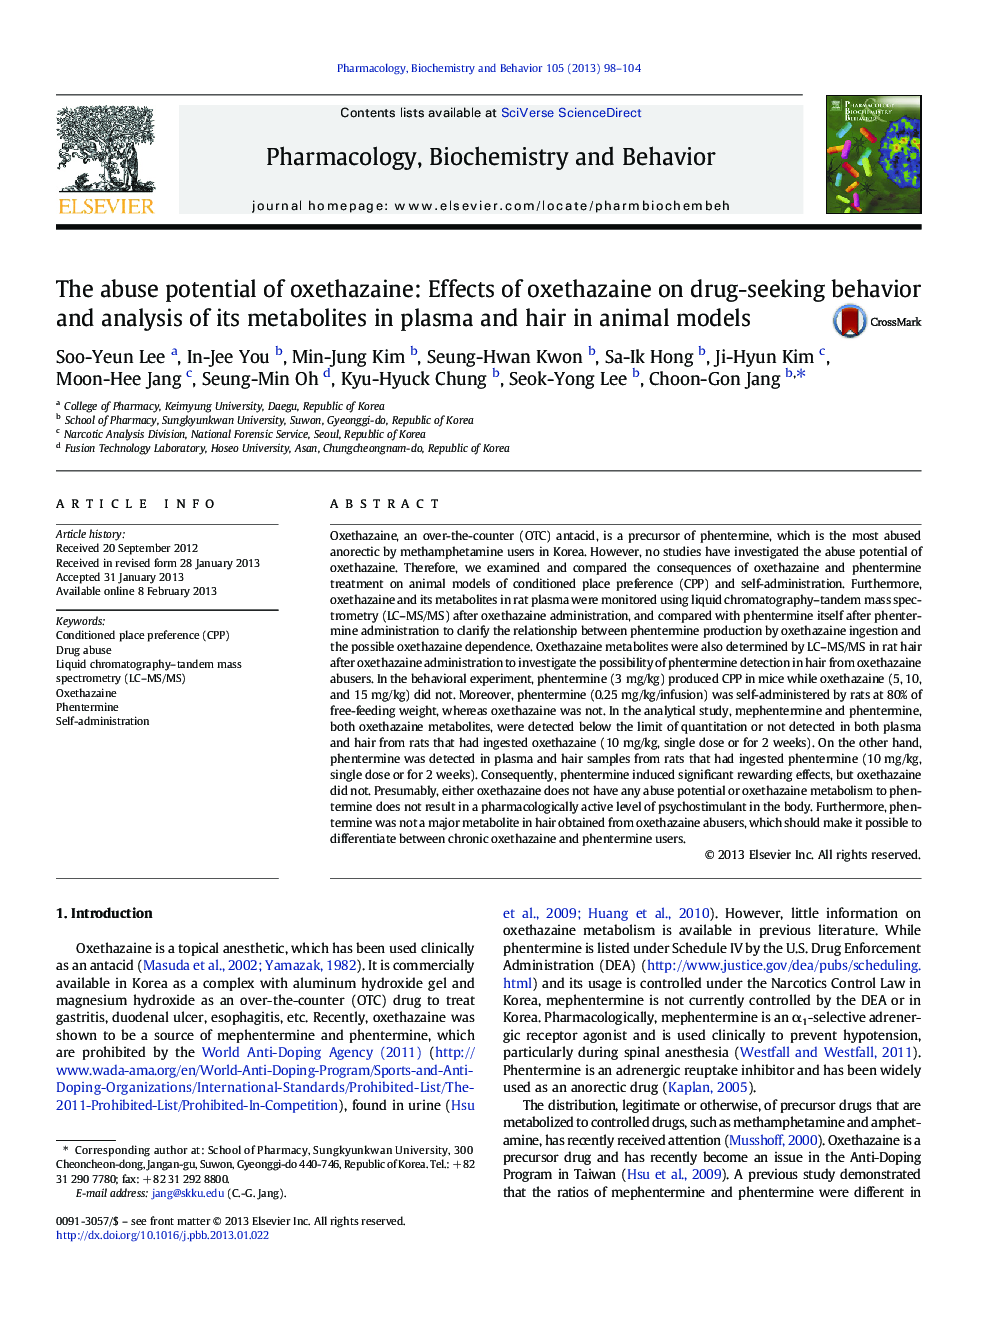 پتانسیل سوء استفاده از اگزتاازین: اثرات اگزتاازین بر رفتار مصرف مواد مخدر و تجزیه و تحلیل متابولیت های آن در پلاسما و مو در مدل های حیوانی 